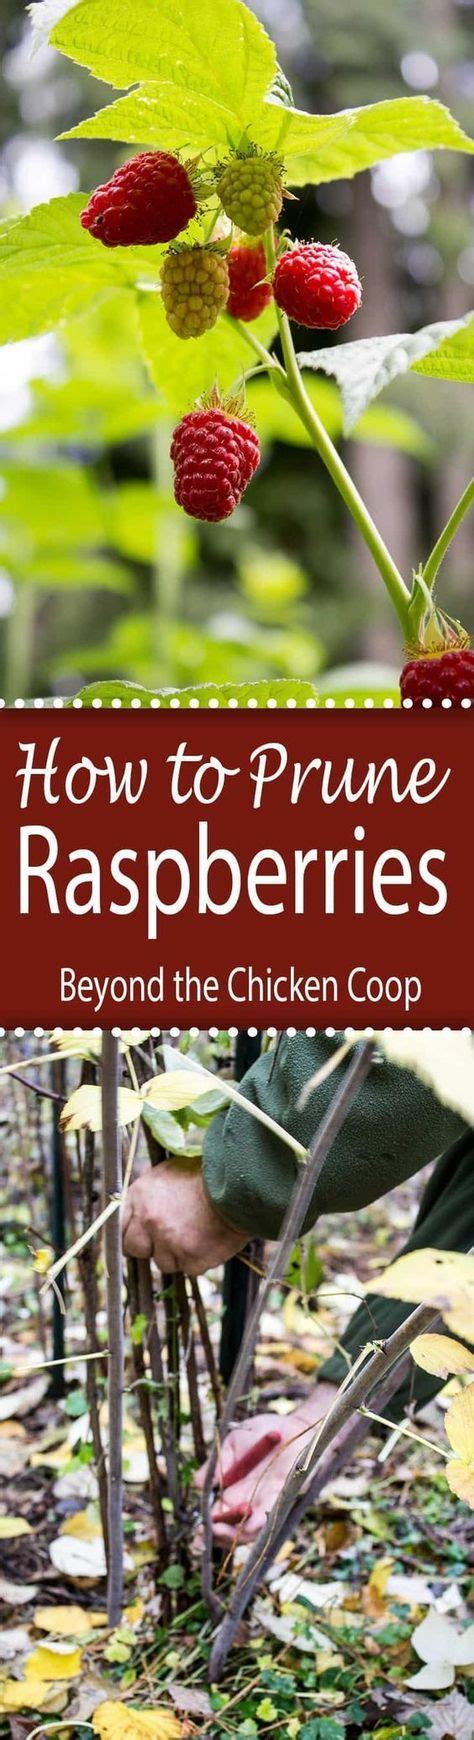 How To Prune Raspberries Pruning Raspberries Raspberry Plants Plants